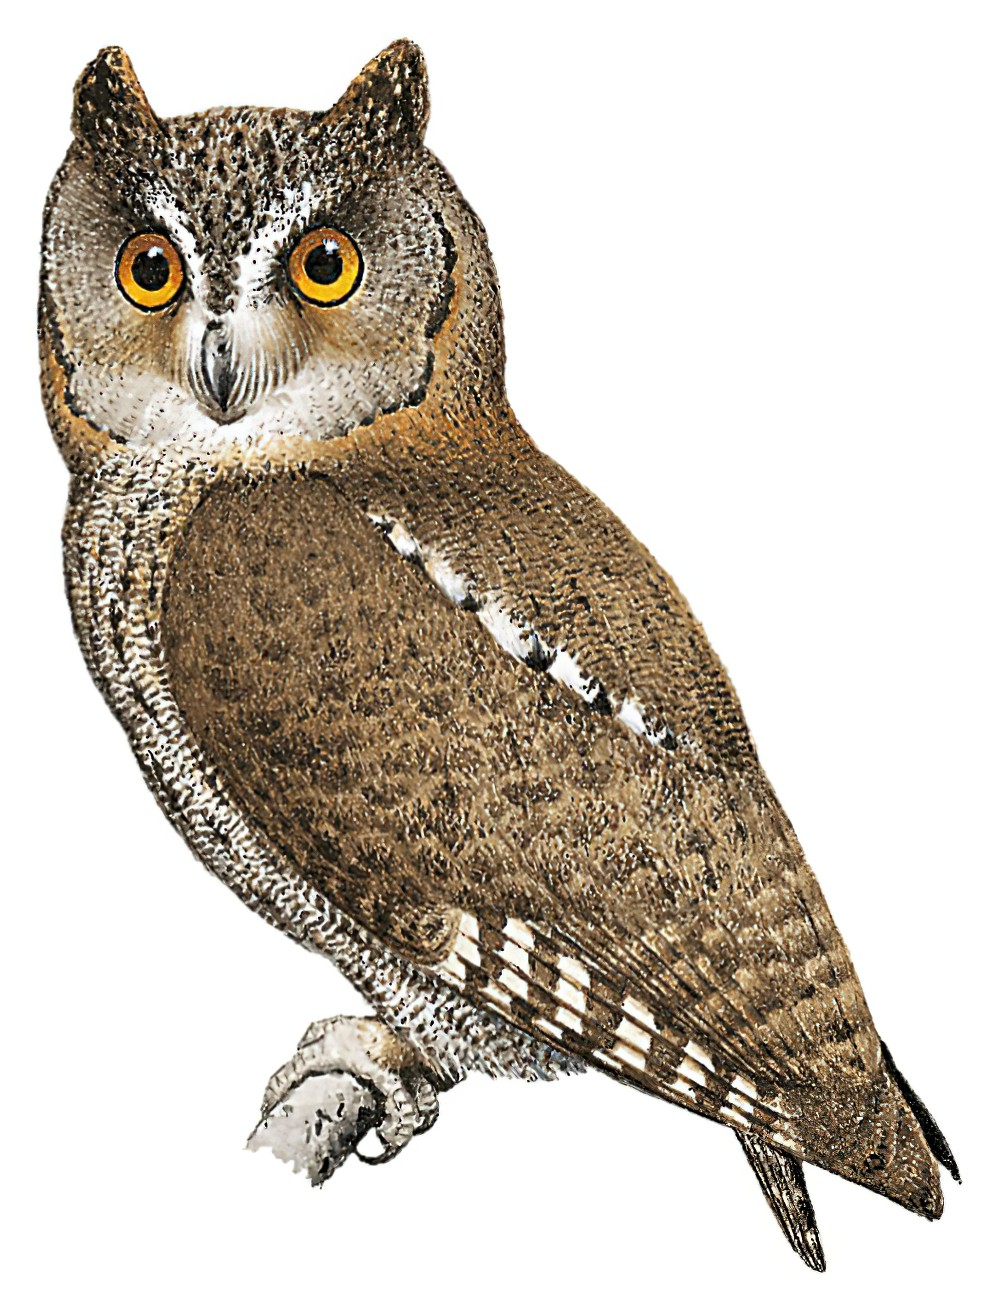 Ryukyu Scops-Owl / Otus elegans